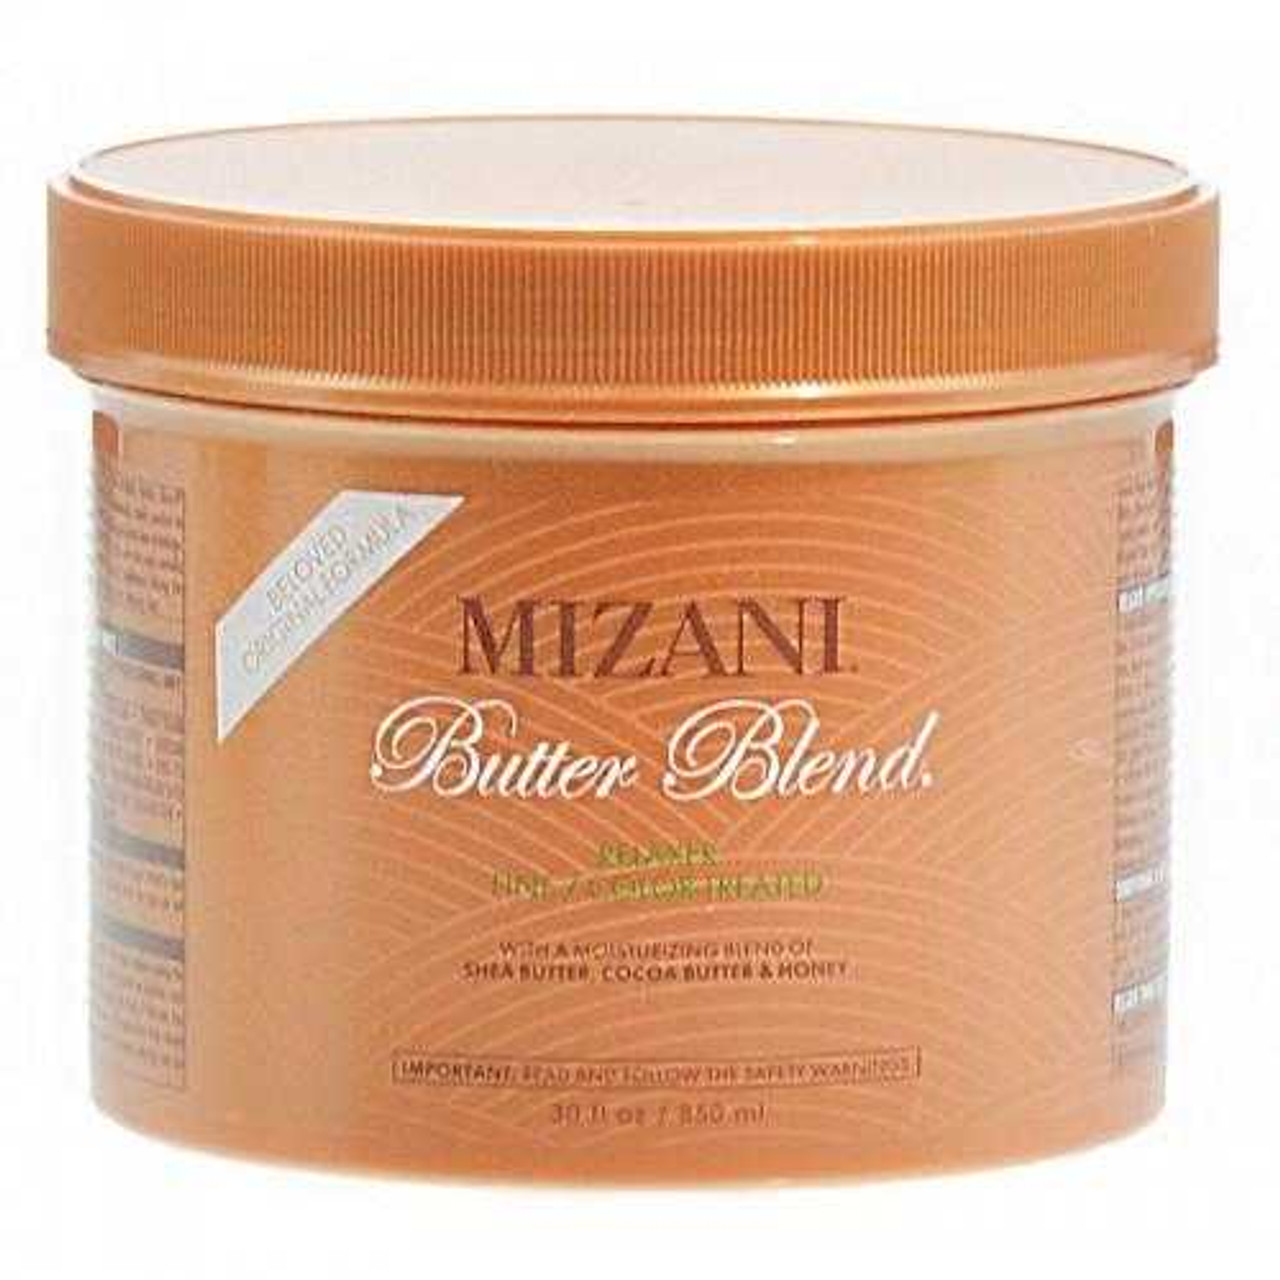 Mizani - Butter Blend Sensitive Scalp Rhelaxer 1 application